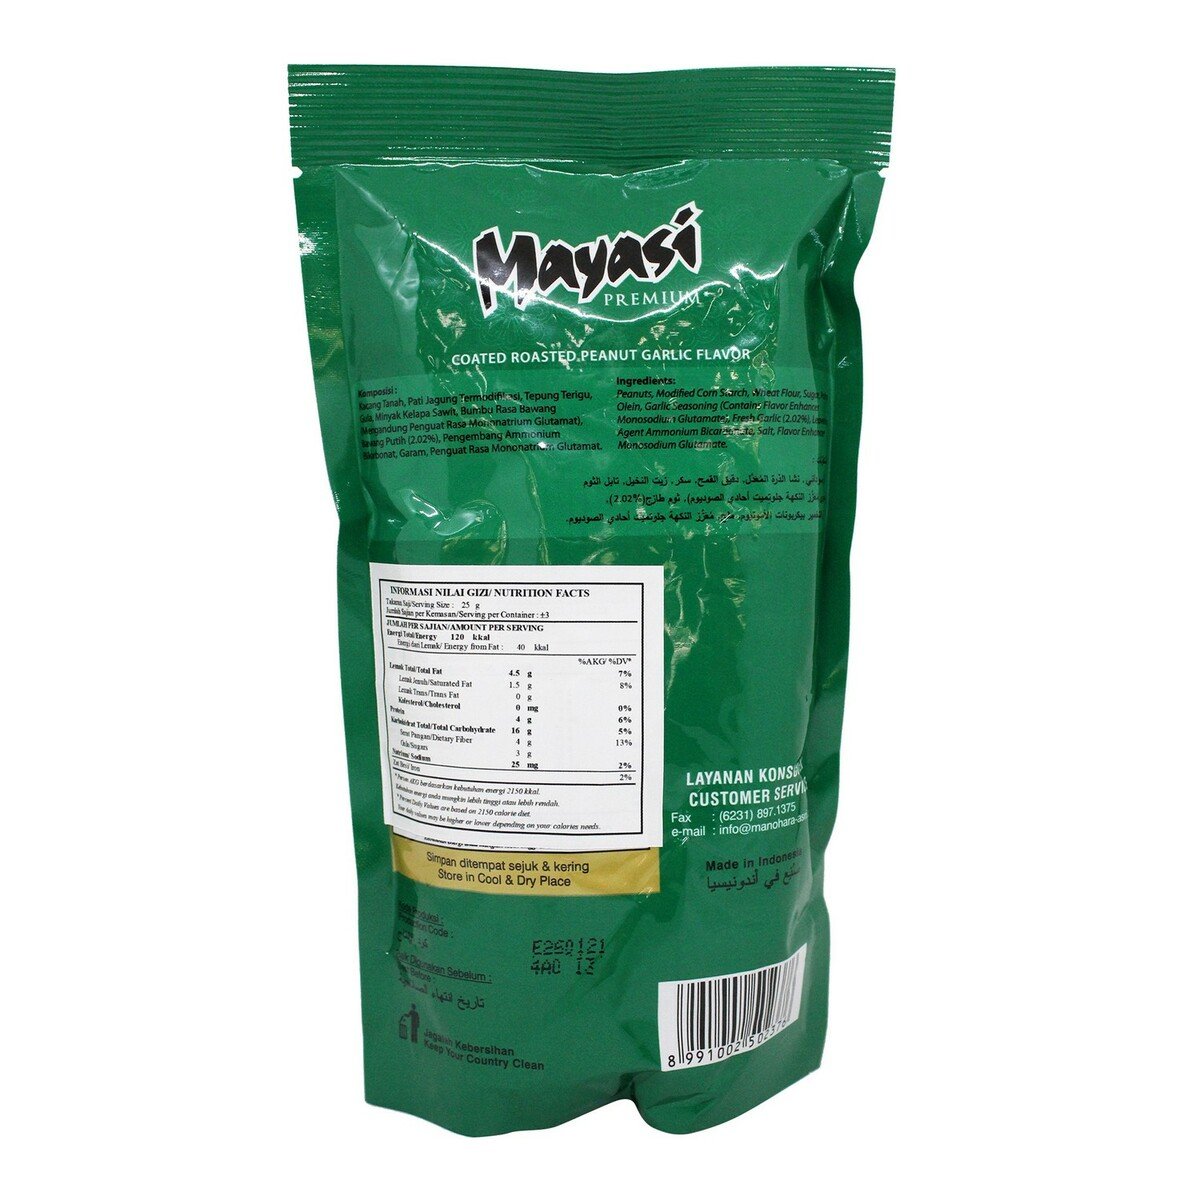 Mayasi Premium Rasa Bawang 80g